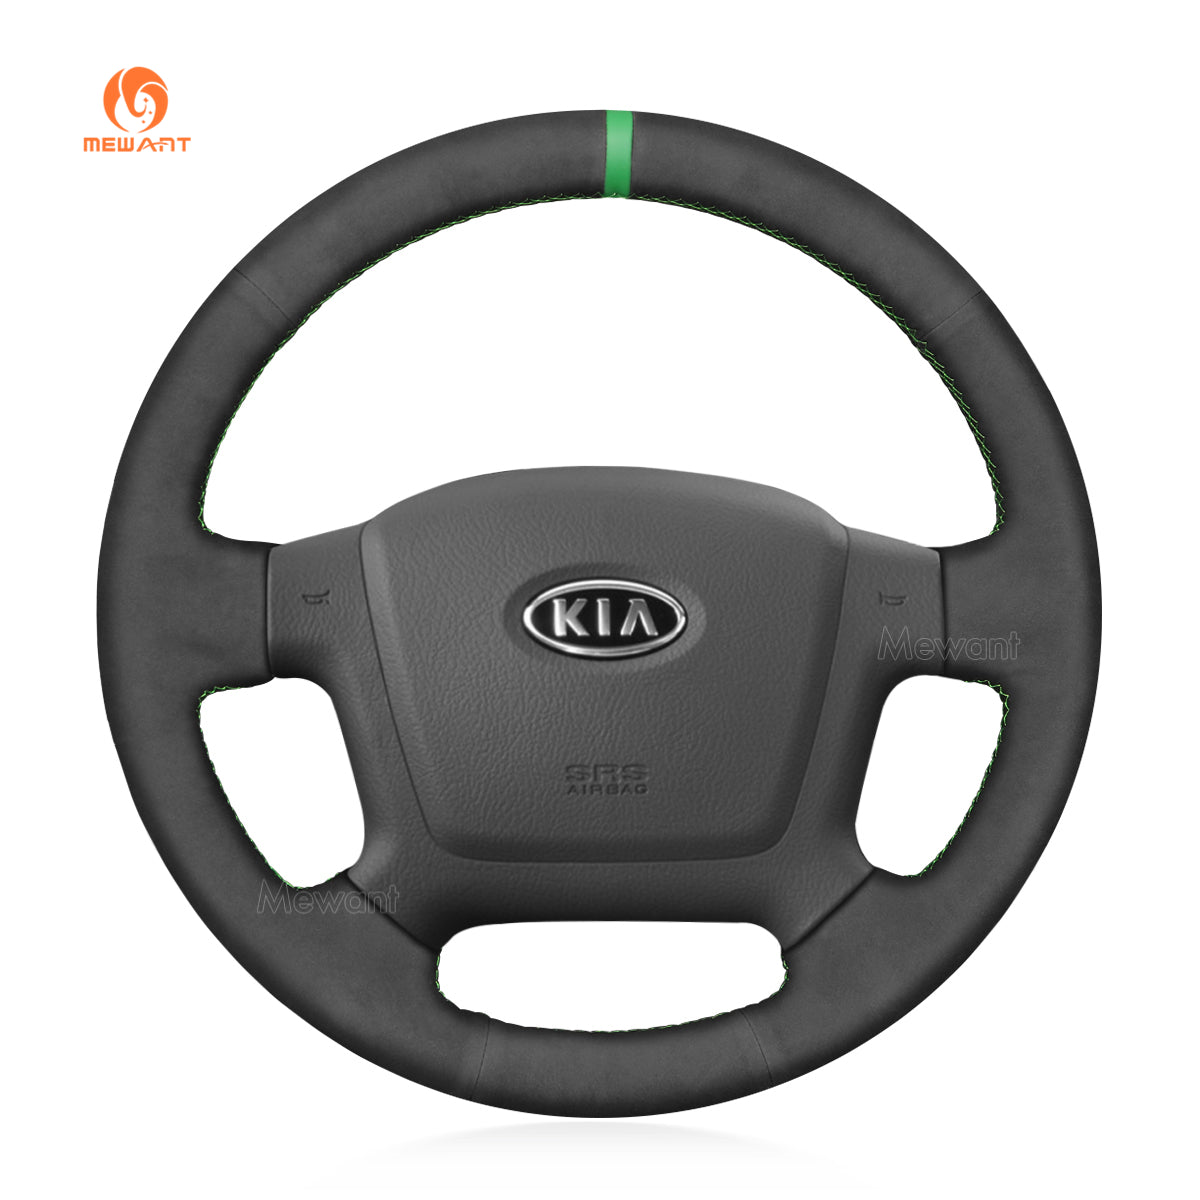 Car Steering Wheel Cover for Kia Spectra (Spectra5) Cerato Soul